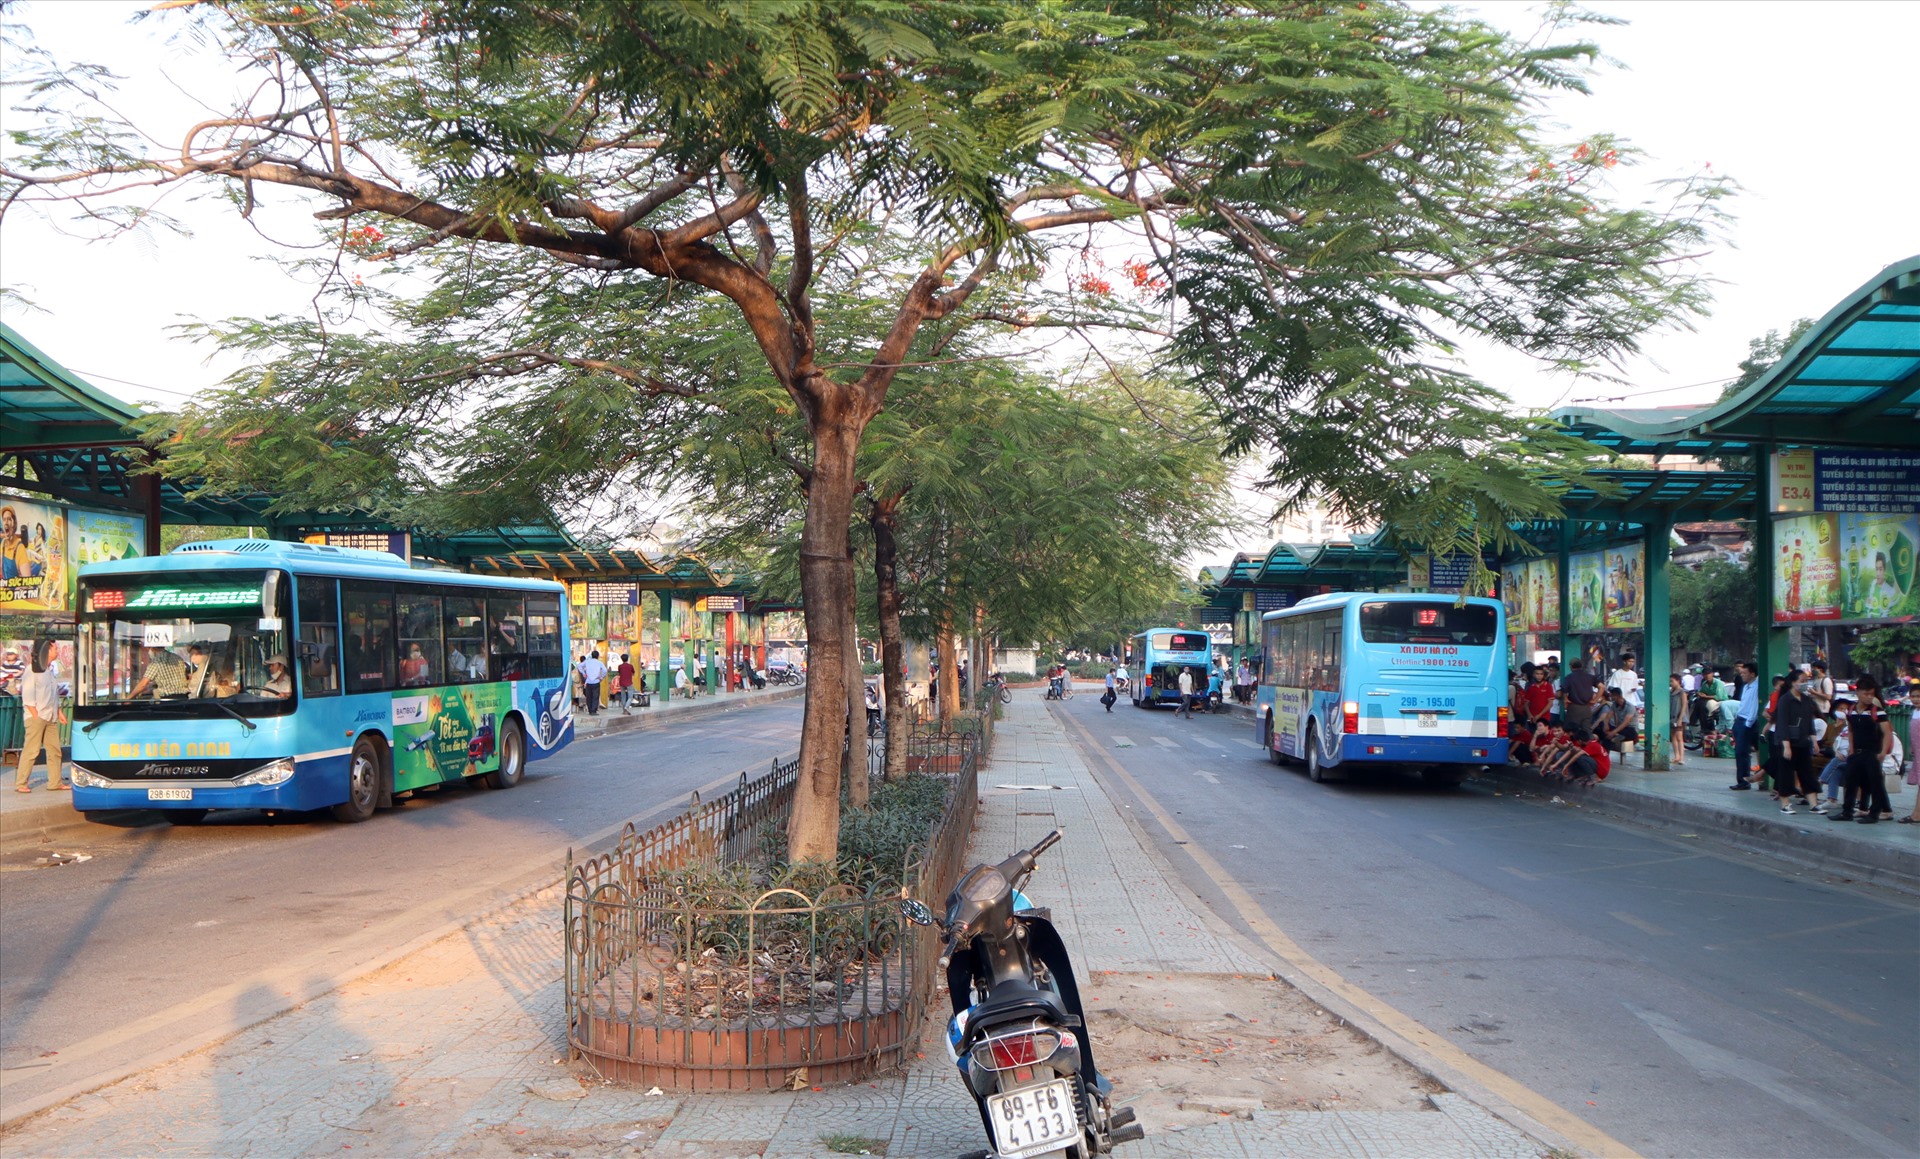 Hệ thống nhà chờ xe buýt trên tuyến đường Trần Nhật Duật (quận Hoàn Kiếm) được xây dựng khang trang với 2 làn xe buýt lưu thông riêng biệt. Ảnh PV.